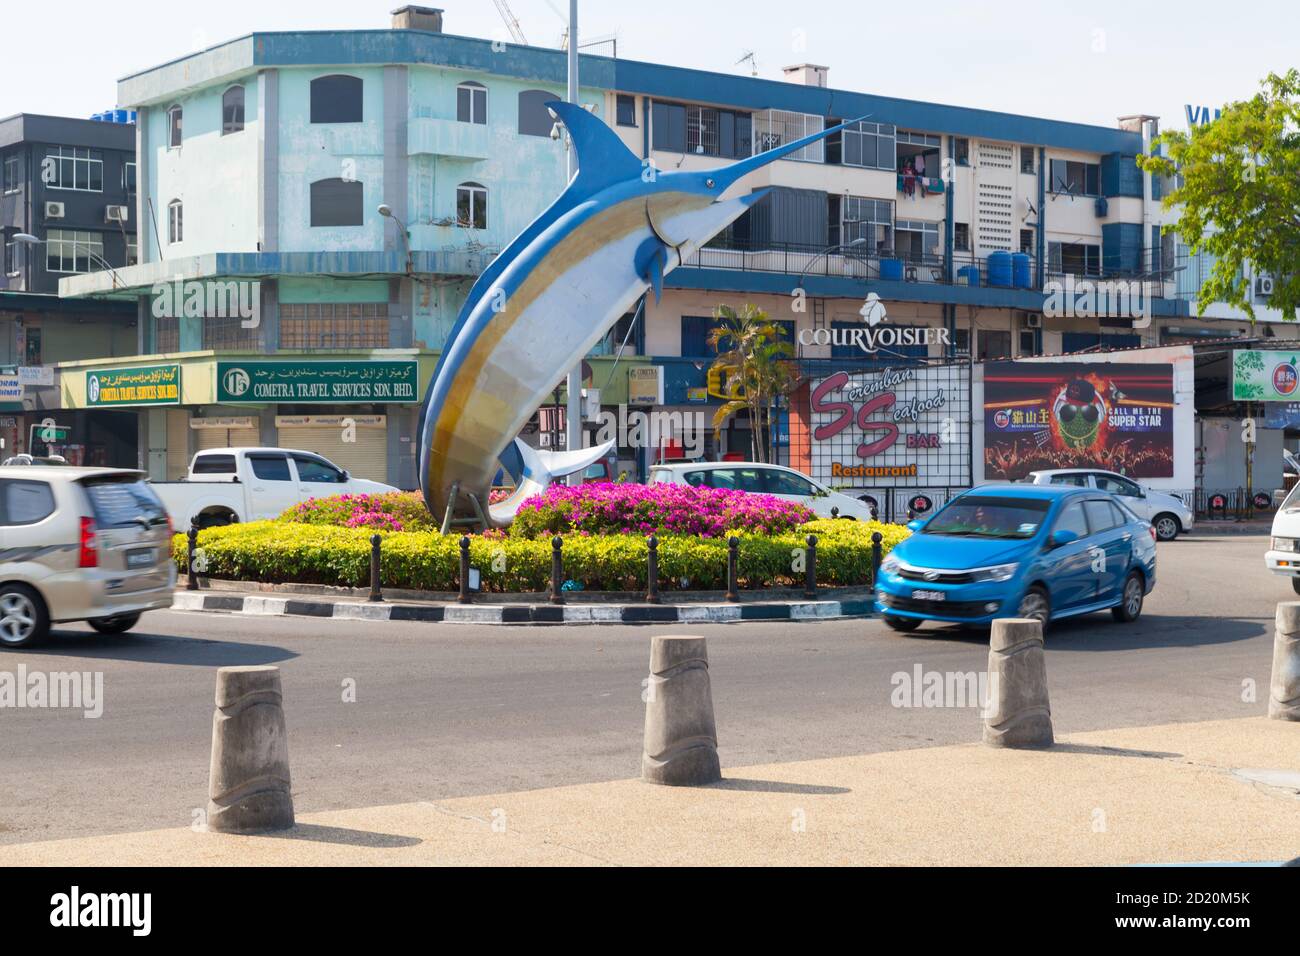 Kota Kinabalu, Malaysia - 17. März 2019: Marlin Statue montiert am Kreisverkehr im zentralen Bezirk von Kota Kinabalu, gehen gewöhnliche Menschen die Straße entlang Stockfoto